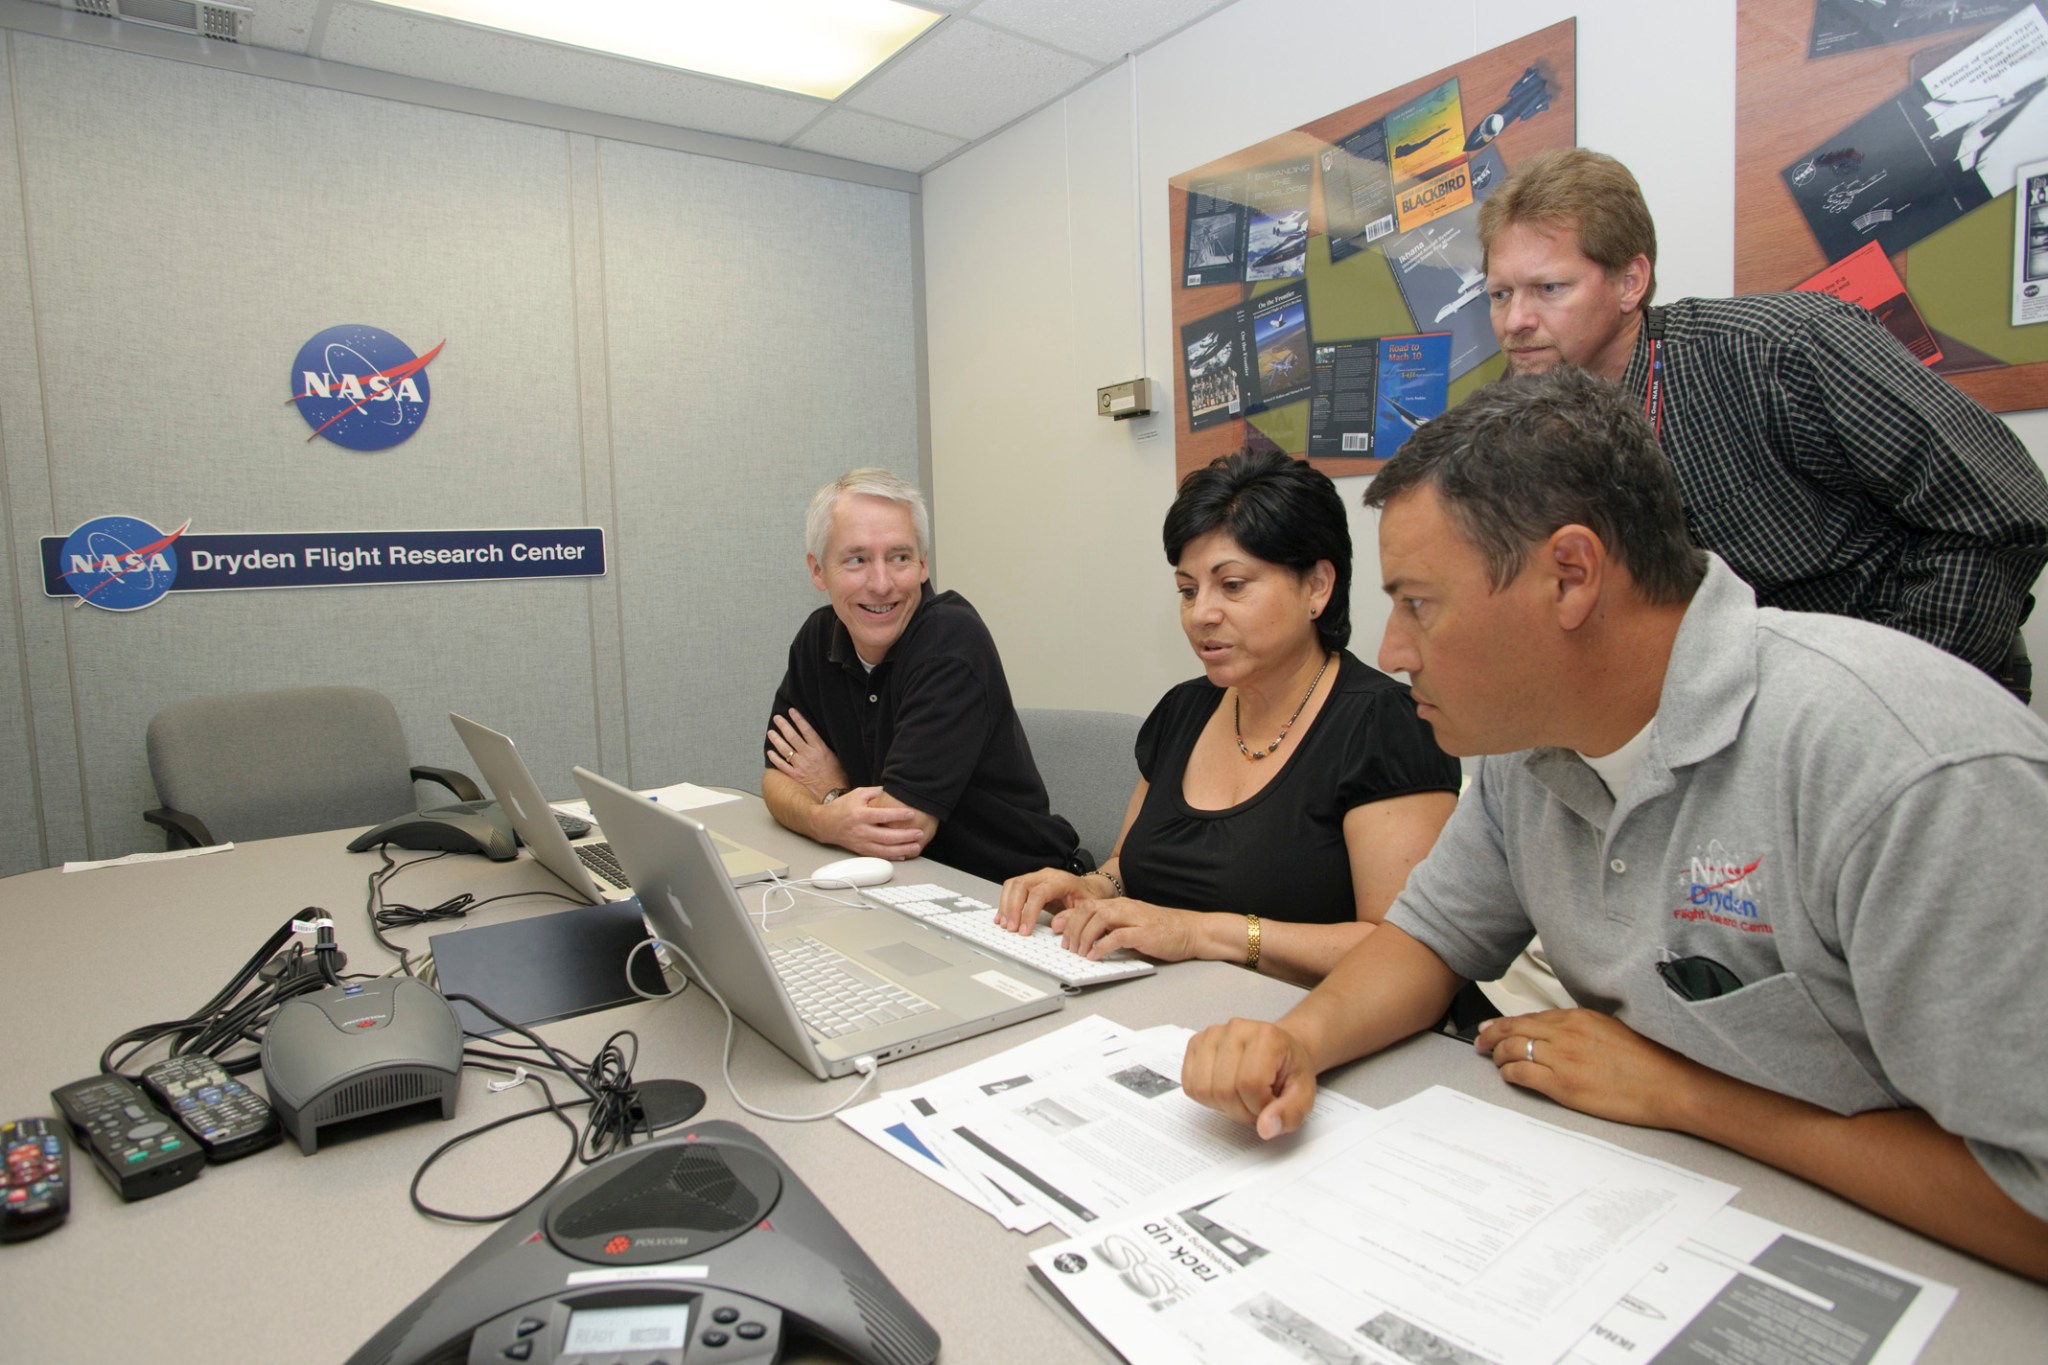 NASA employees and NASA Pilot Posada sitting at a table participating in a webchat.